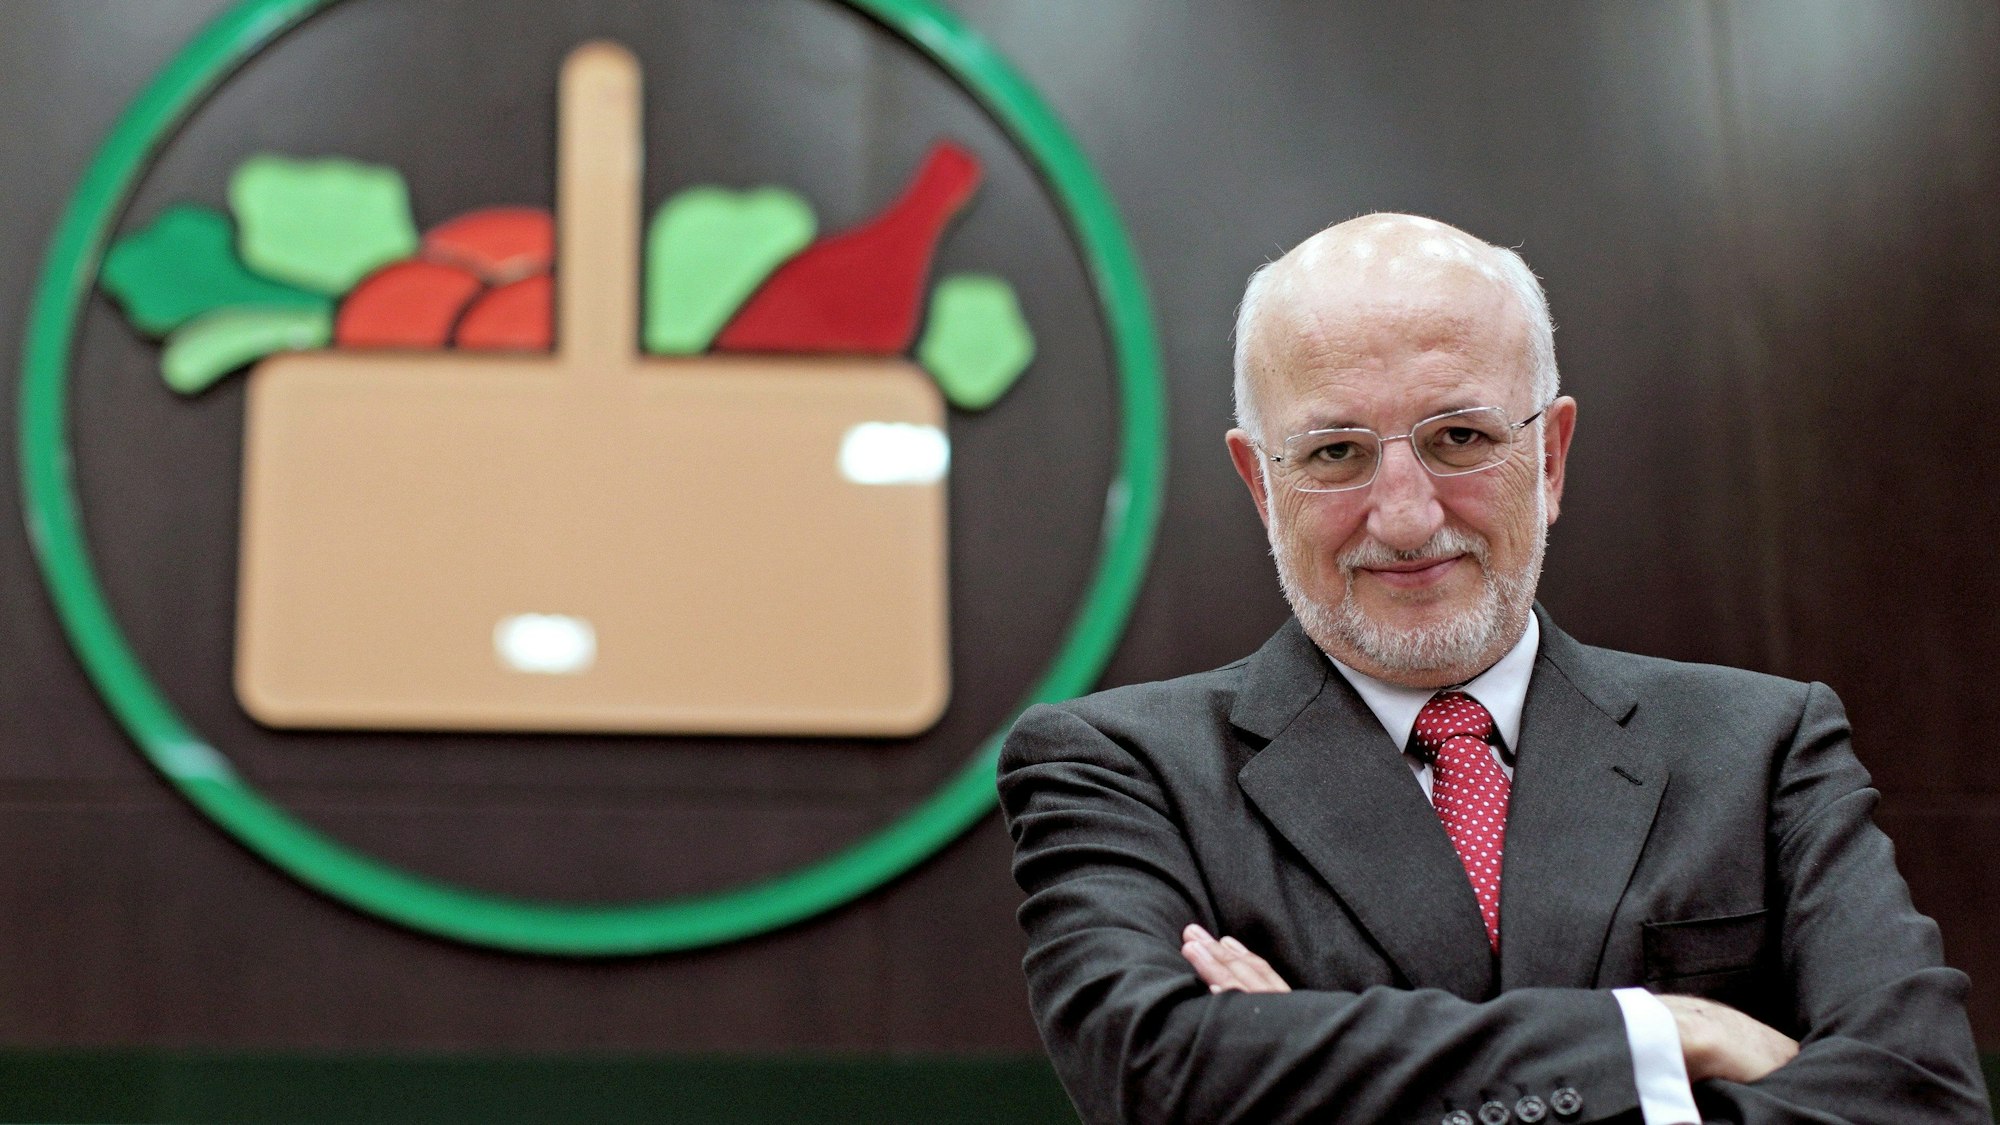 Das Foto aus dem Jahr 2012 zeigt den Chef der spanischen Supermarkt-Kette Mercadona.